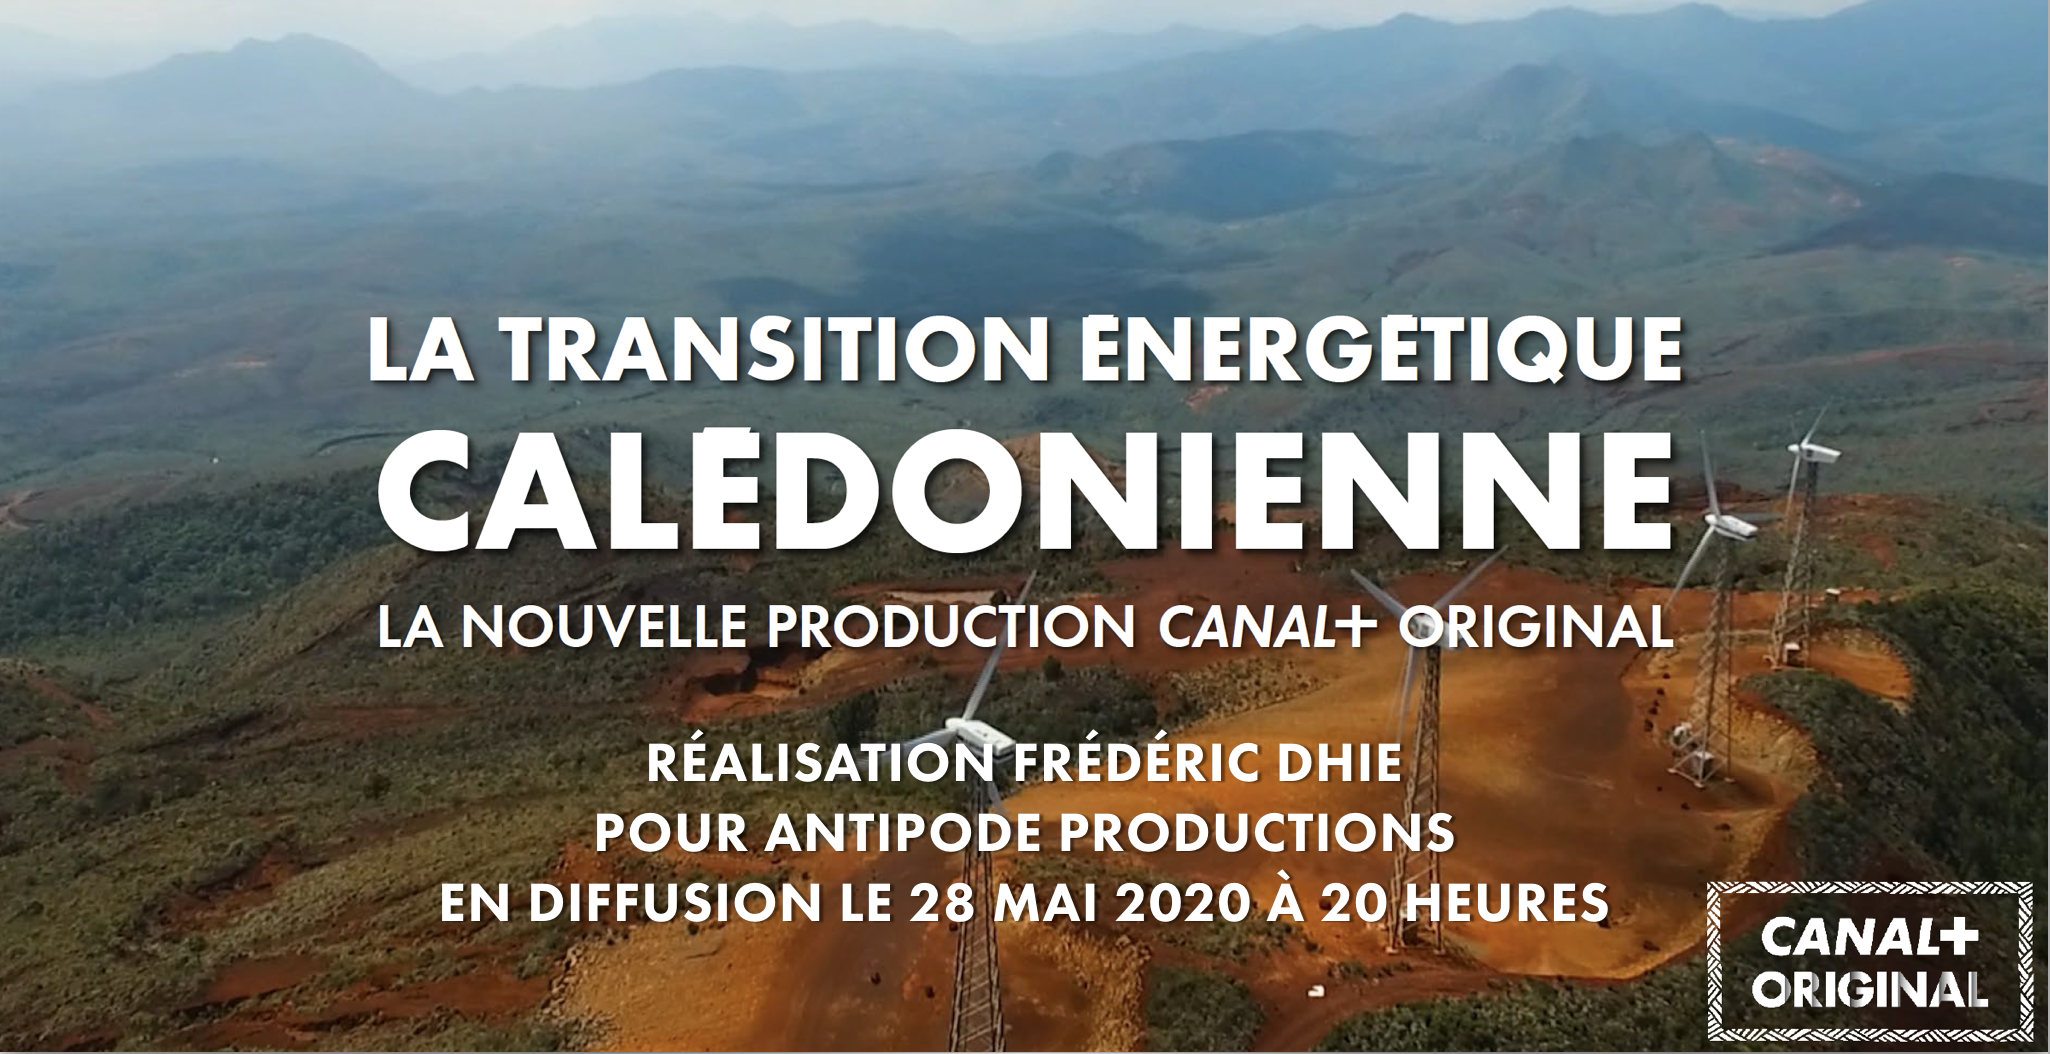 La transition énergétique calédonienne en diffusion sur CANAL+